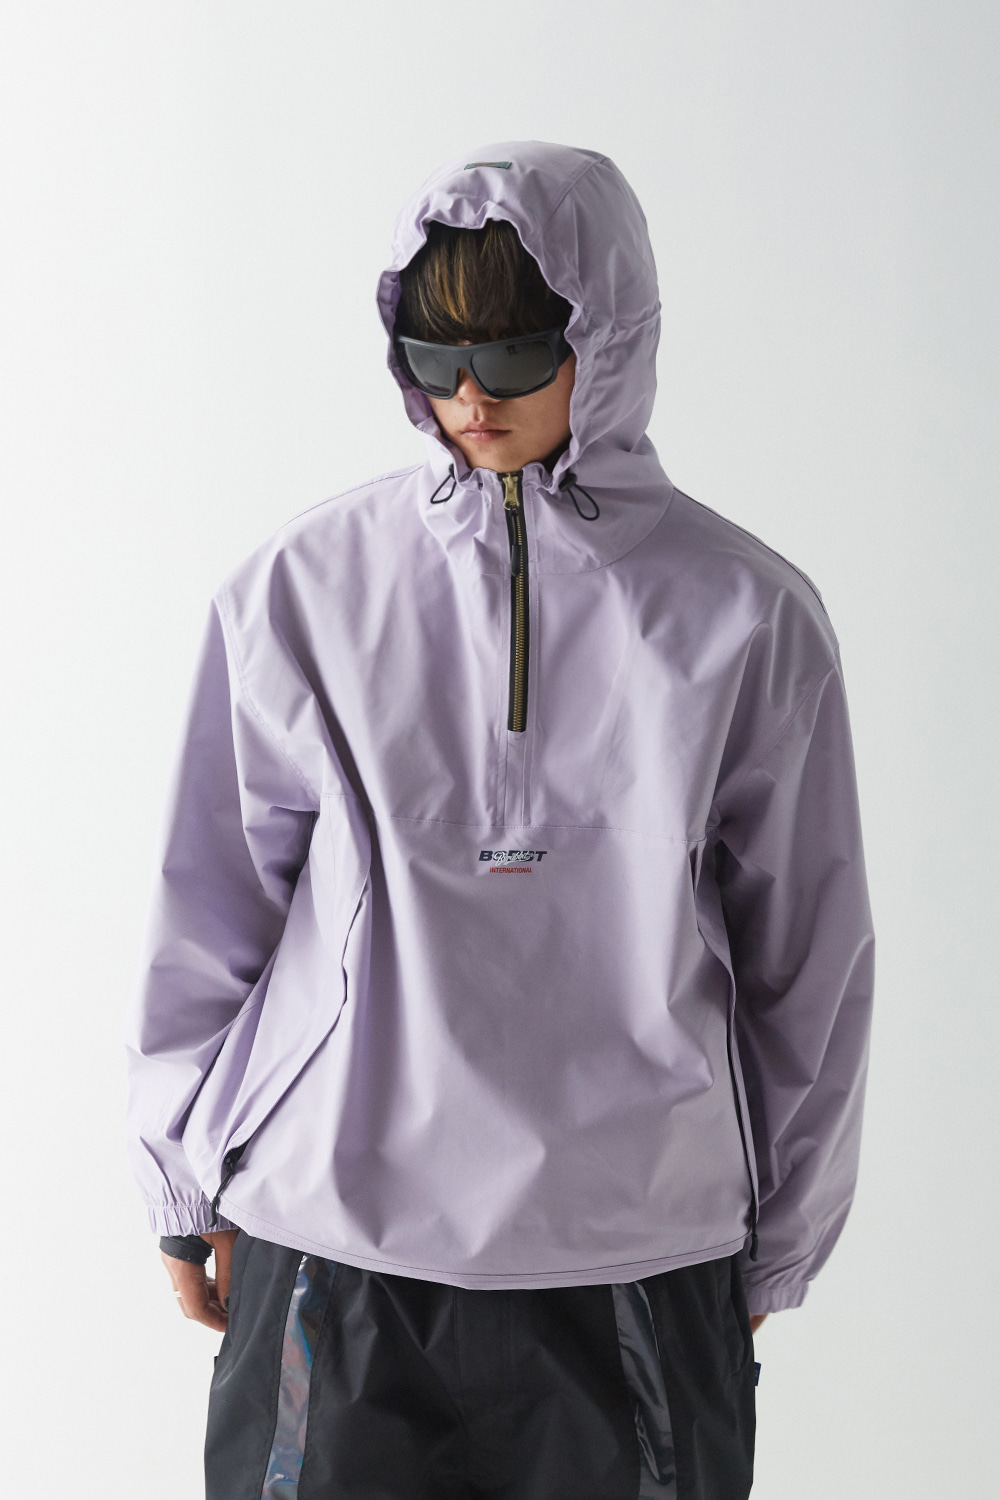 MUSINSA | BSRABBIT BSM Stretch Hooded Anorak Jacket Pastel Purple